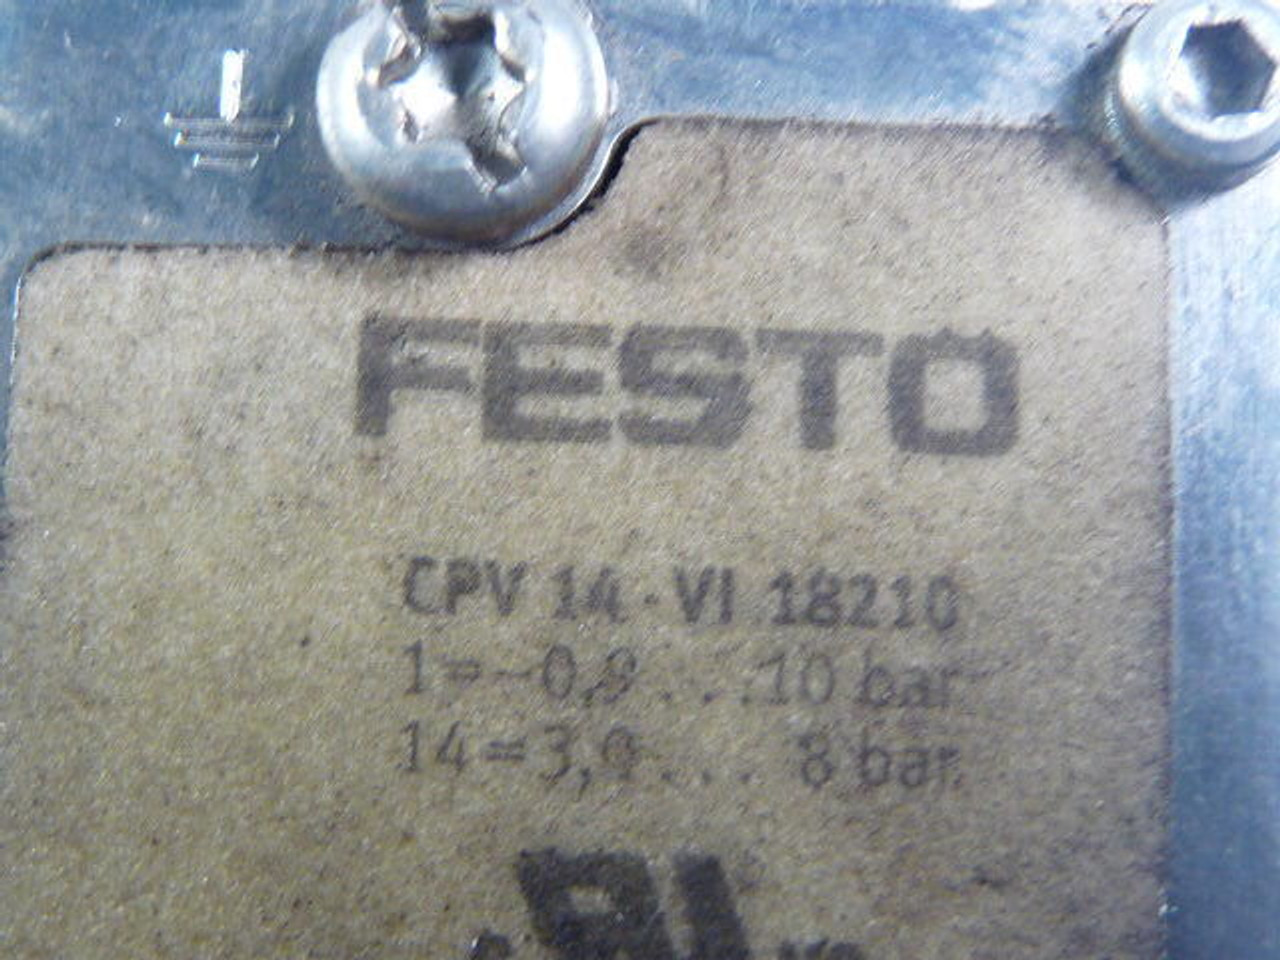 Festo 18210 CPV-14-VI Pneumatic Manifold -0.9-10 bar/3.0-8 bar USED